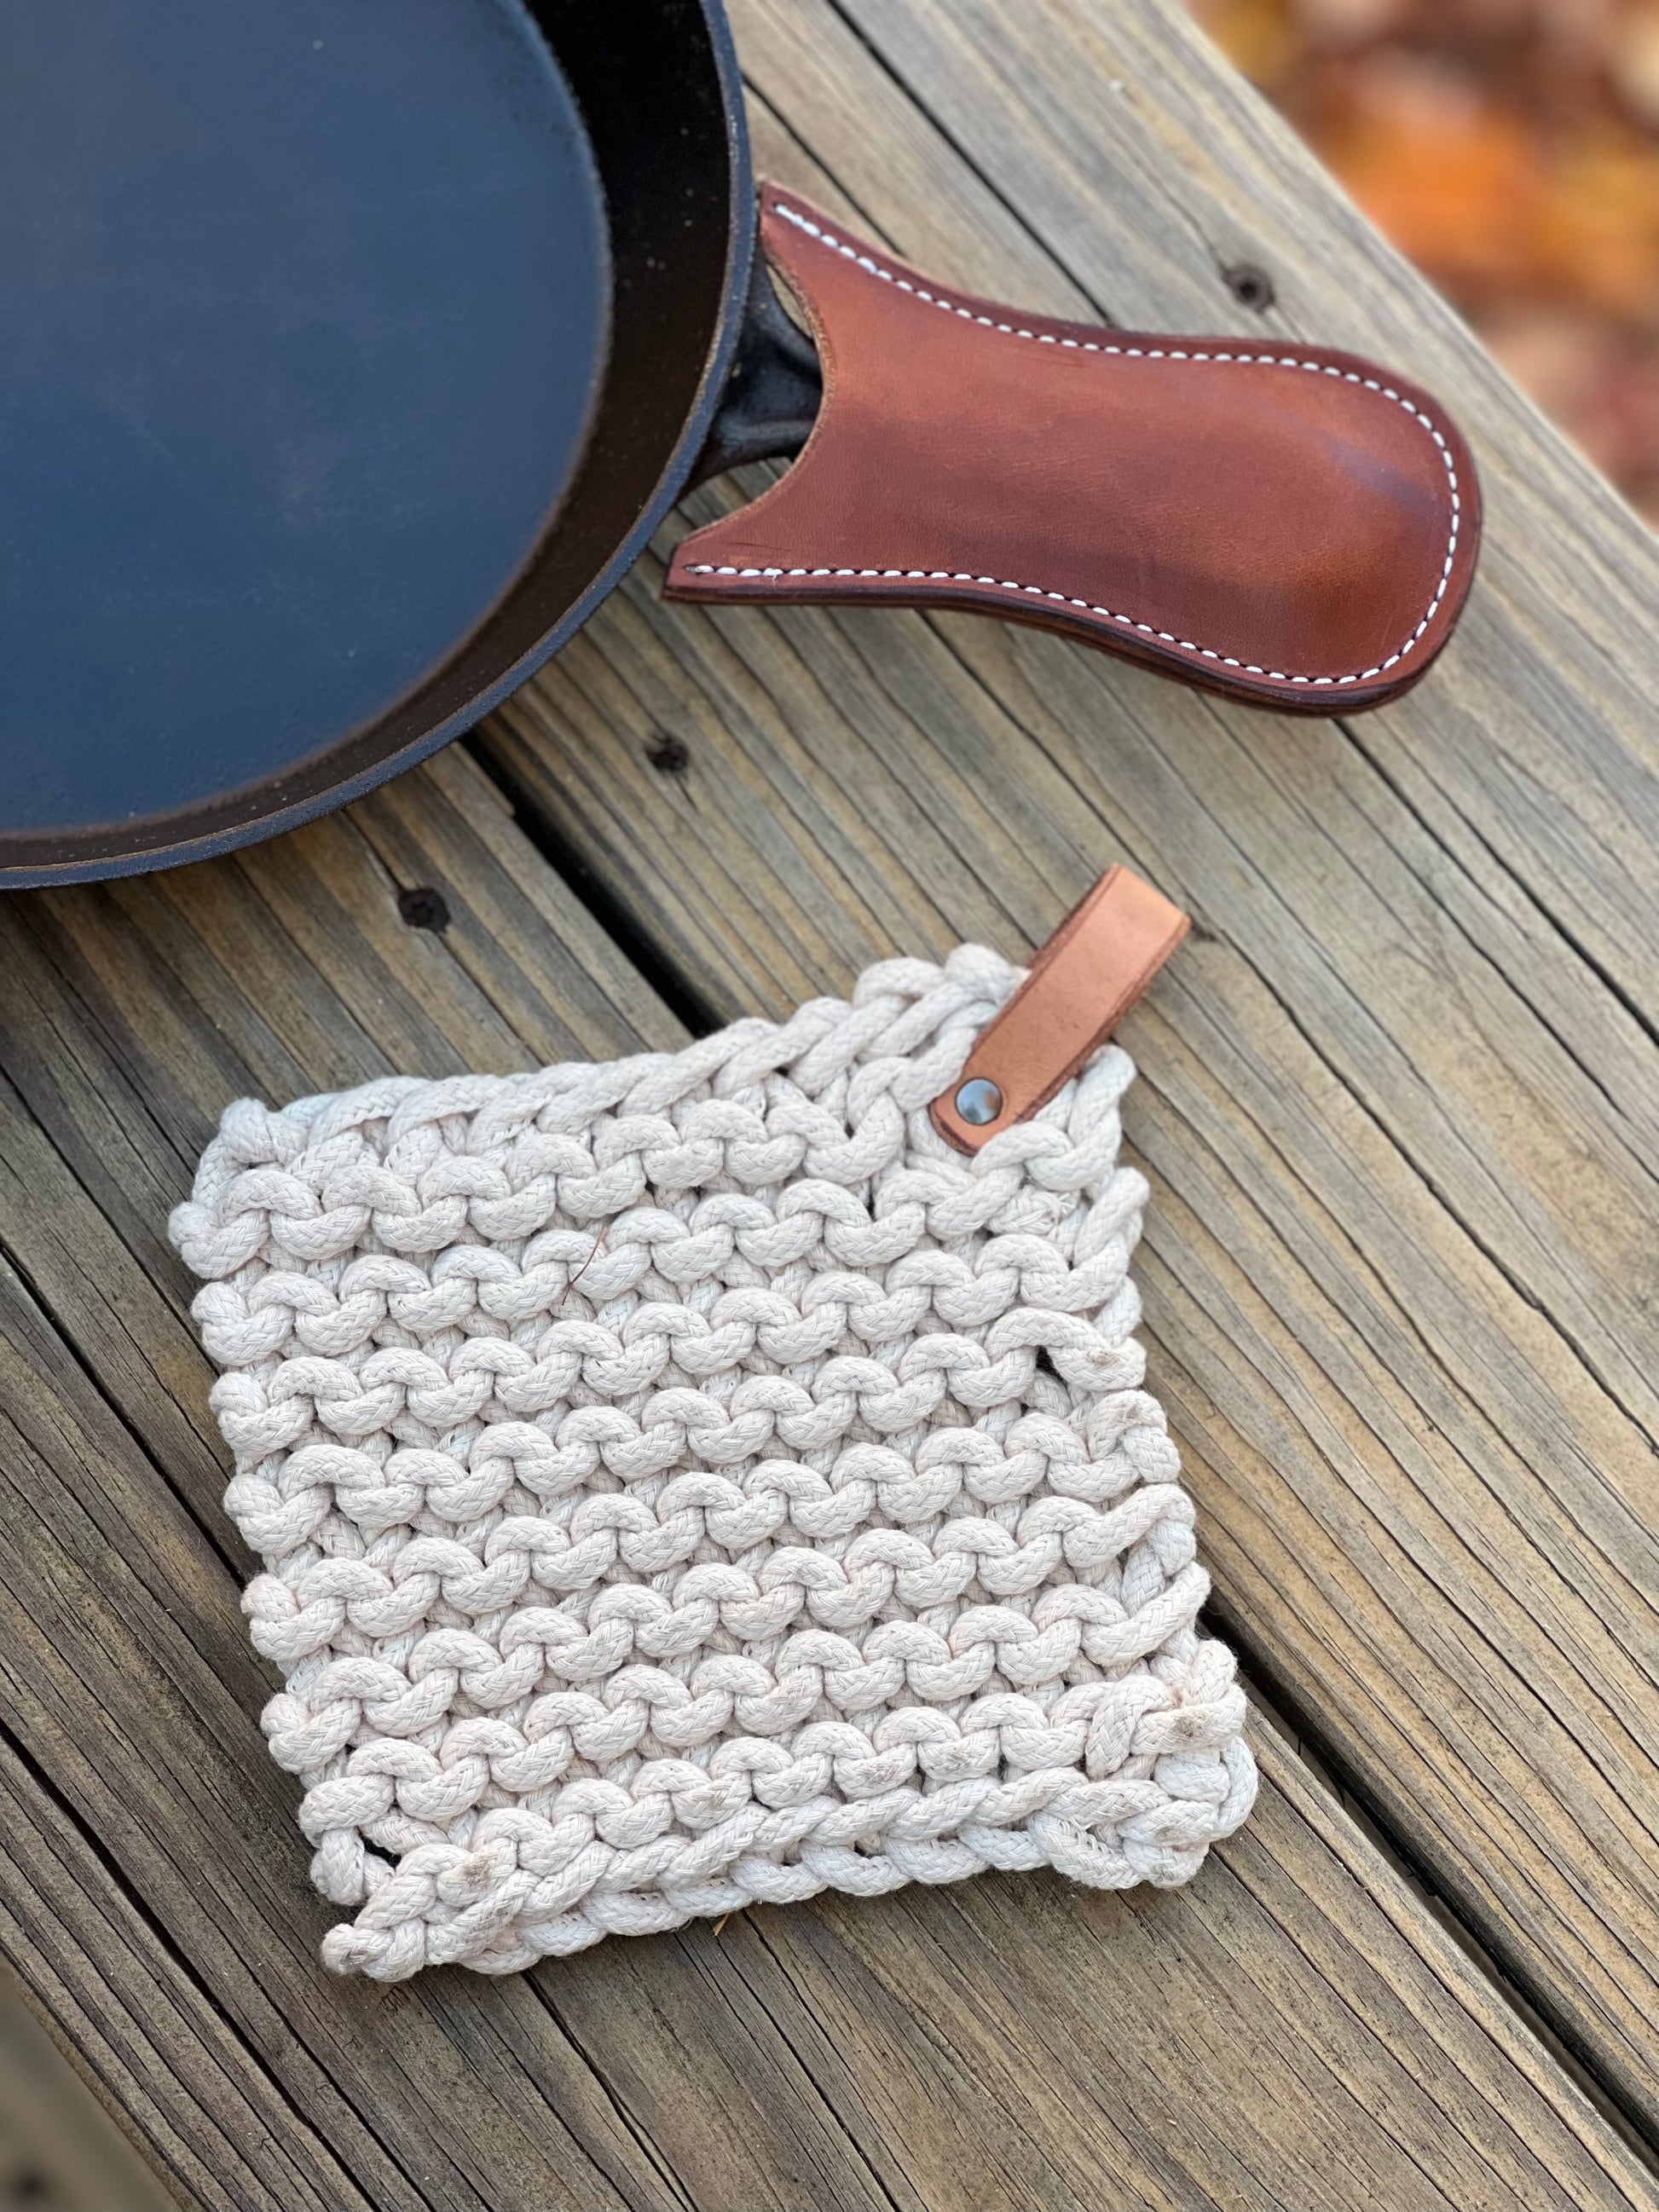 Cast Iron Handle Cover. 2-pk. Crochet 100% Cotton Skillet 